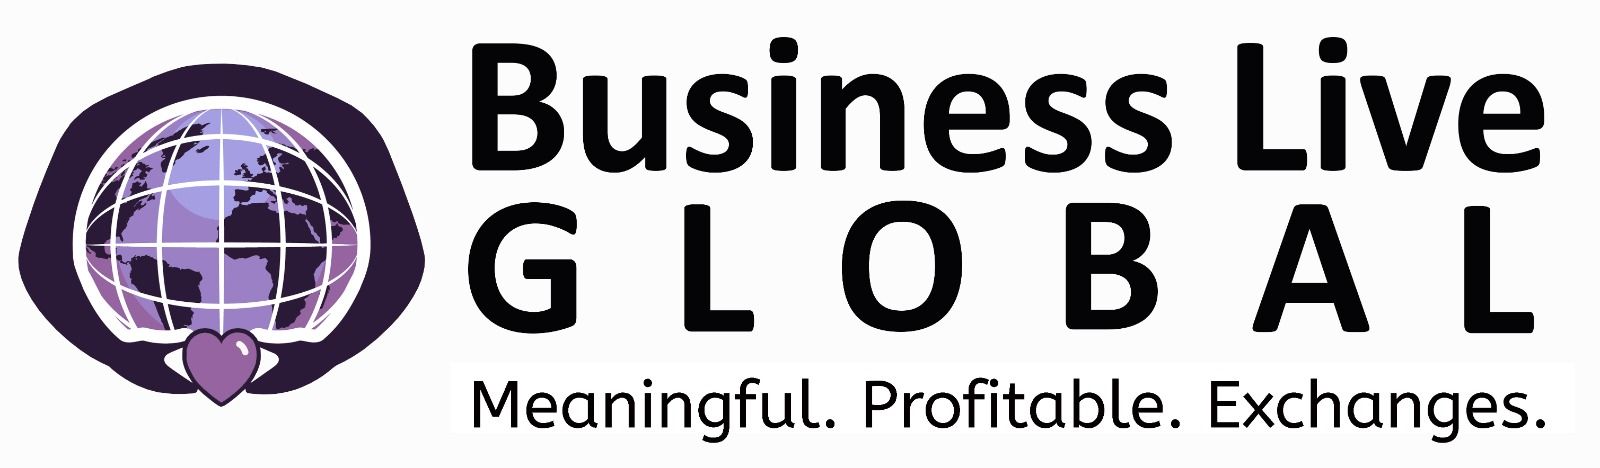 Business Live Global USA LLC